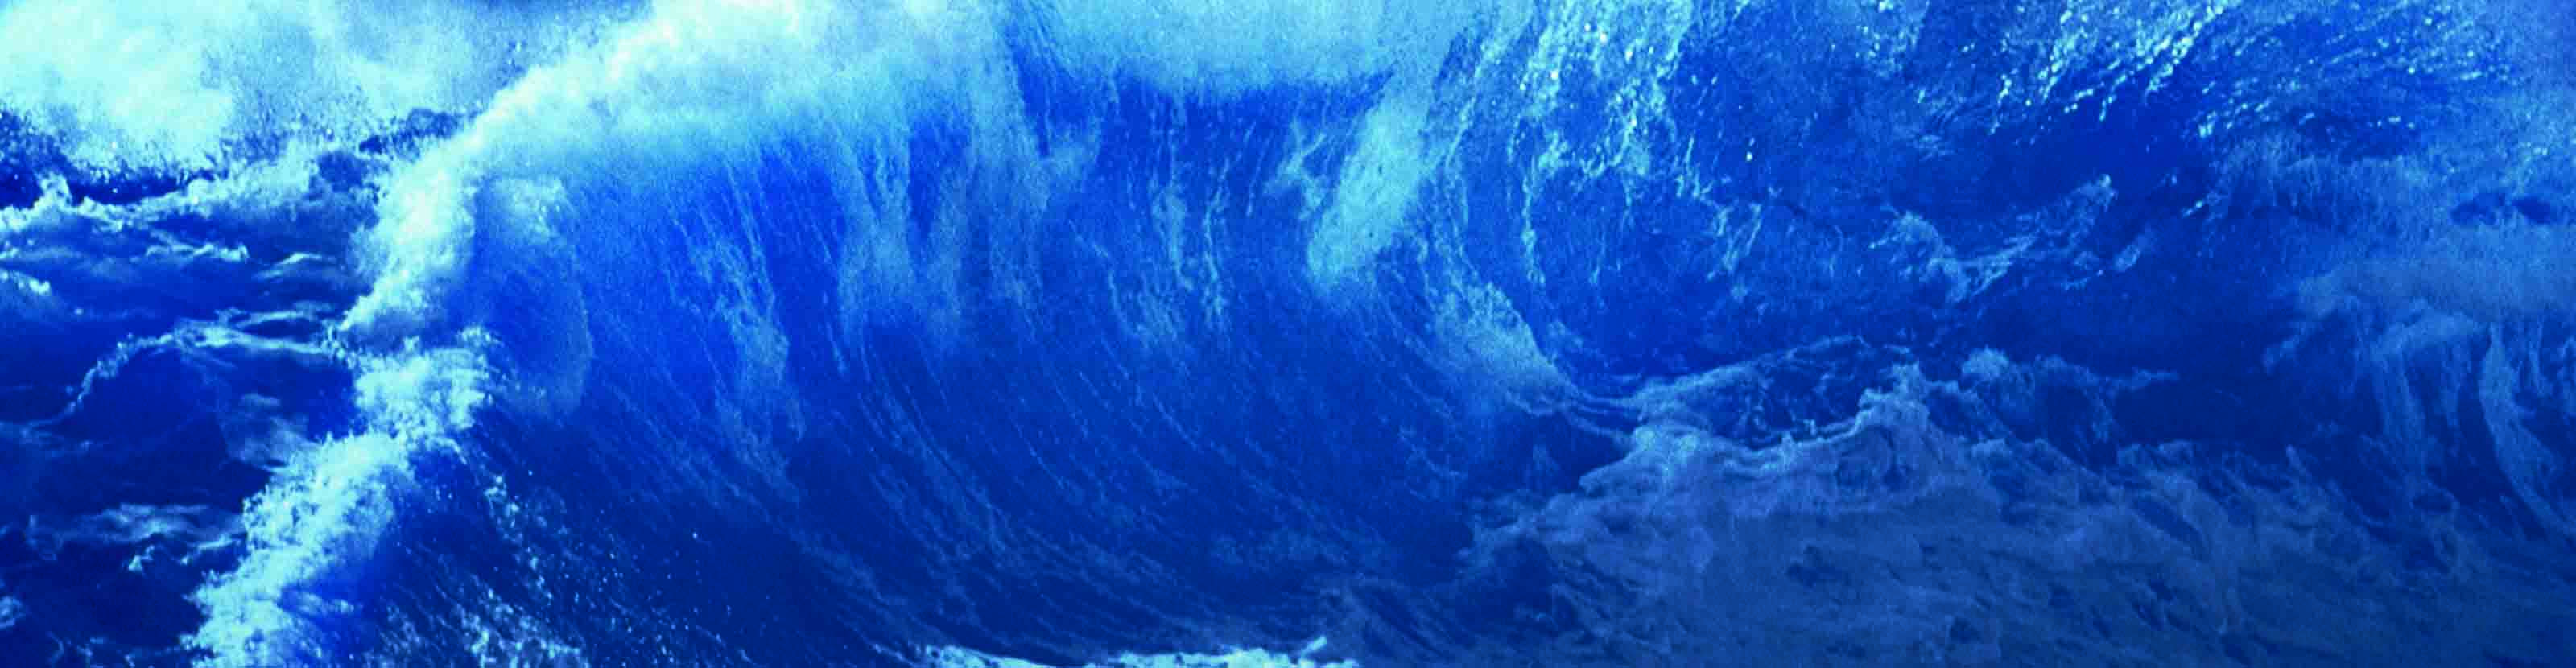 Blue ocean waves.